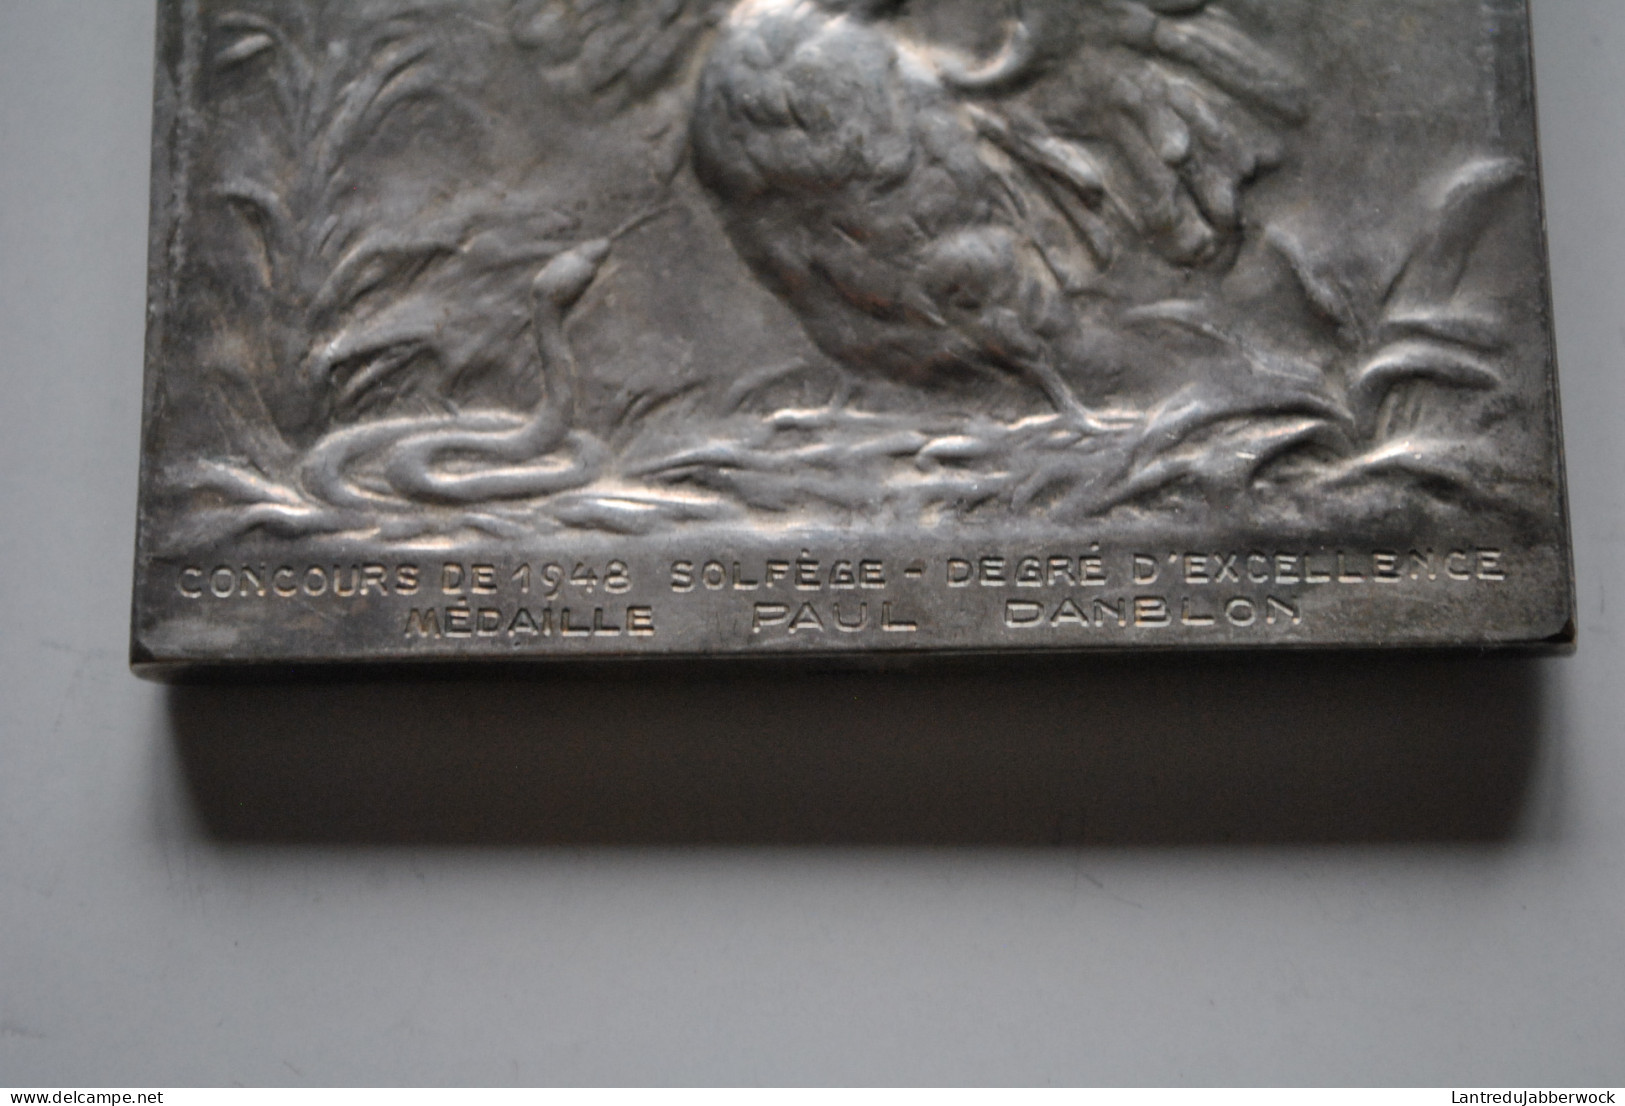 Médaille En Bronze Argenté Ecole De Musique De Saint Josse Ten Noode Schaerbeek Concours 1948 De Solfège Paul Danblon - Fichas De Municipios